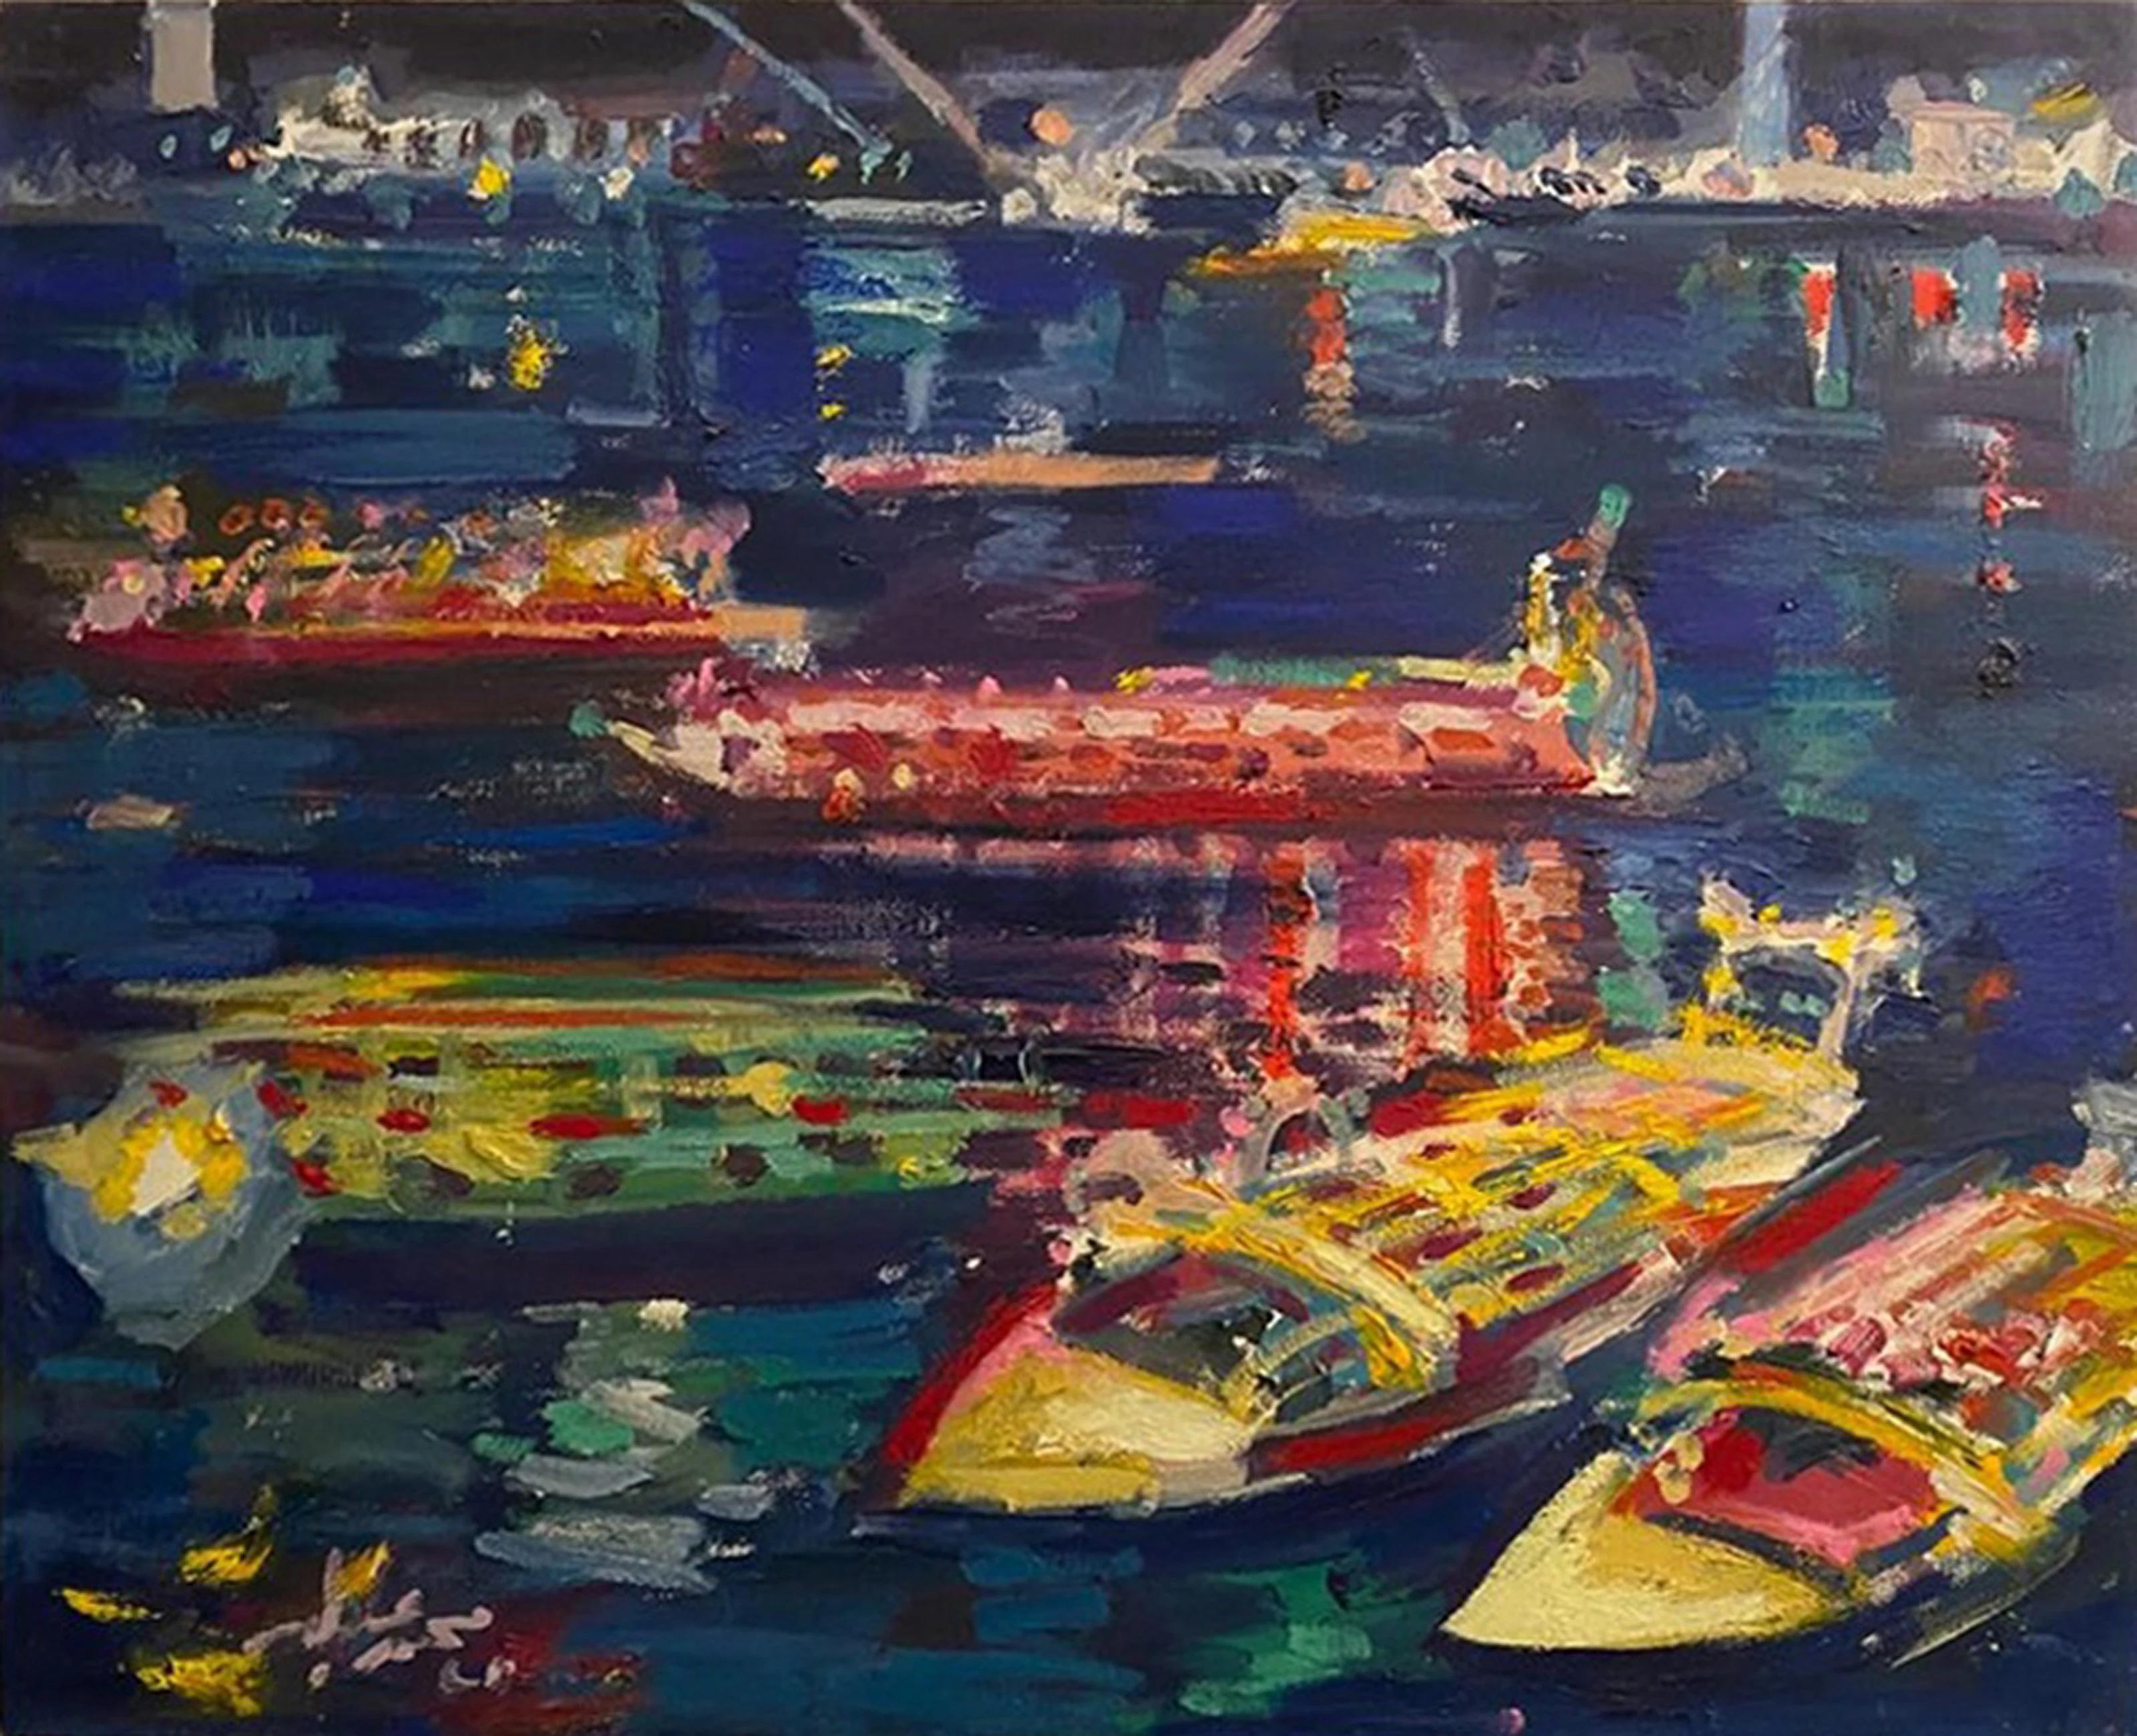 "Nile by Night VII" Peinture 20" x 24" inch par Mohamed Abla

Mohamed Abla est né à Mansoura (nord de l'Égypte) en 1953. C'est là qu'il a passé son enfance et terminé sa scolarité. En 1973, il s'est installé à Alexandrie pour entamer des études